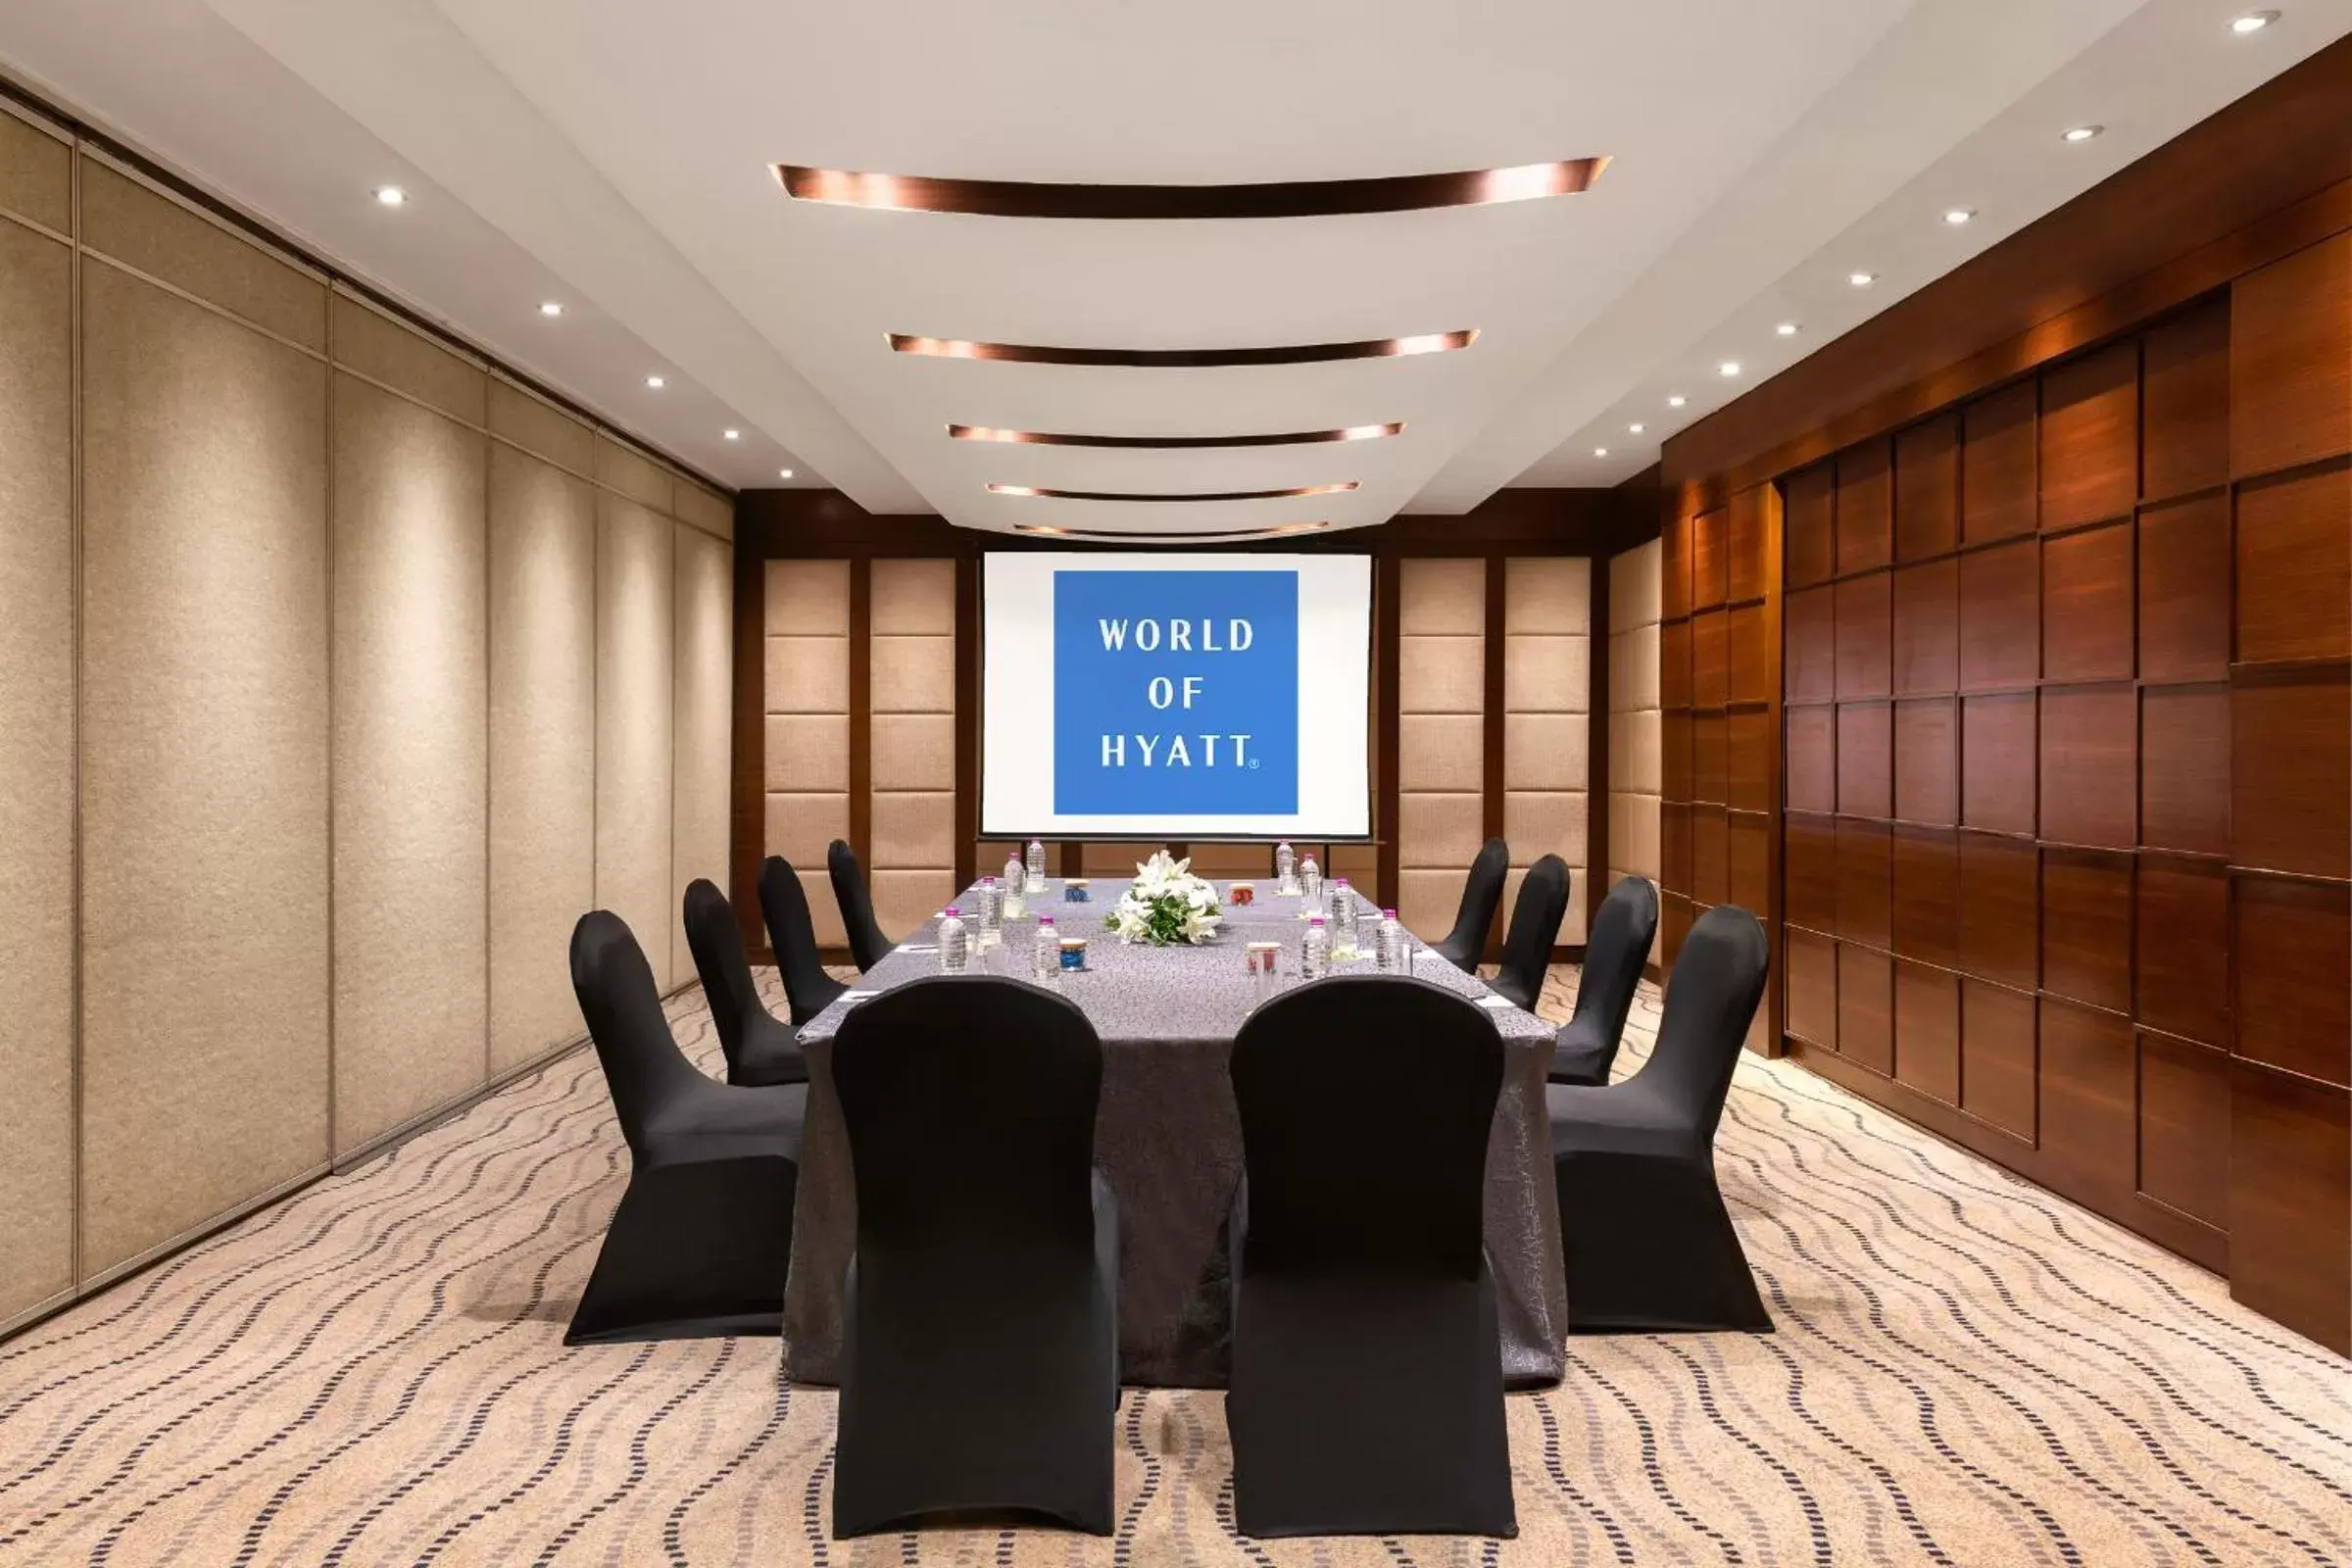 Meeting/conference room in Hyatt Pune